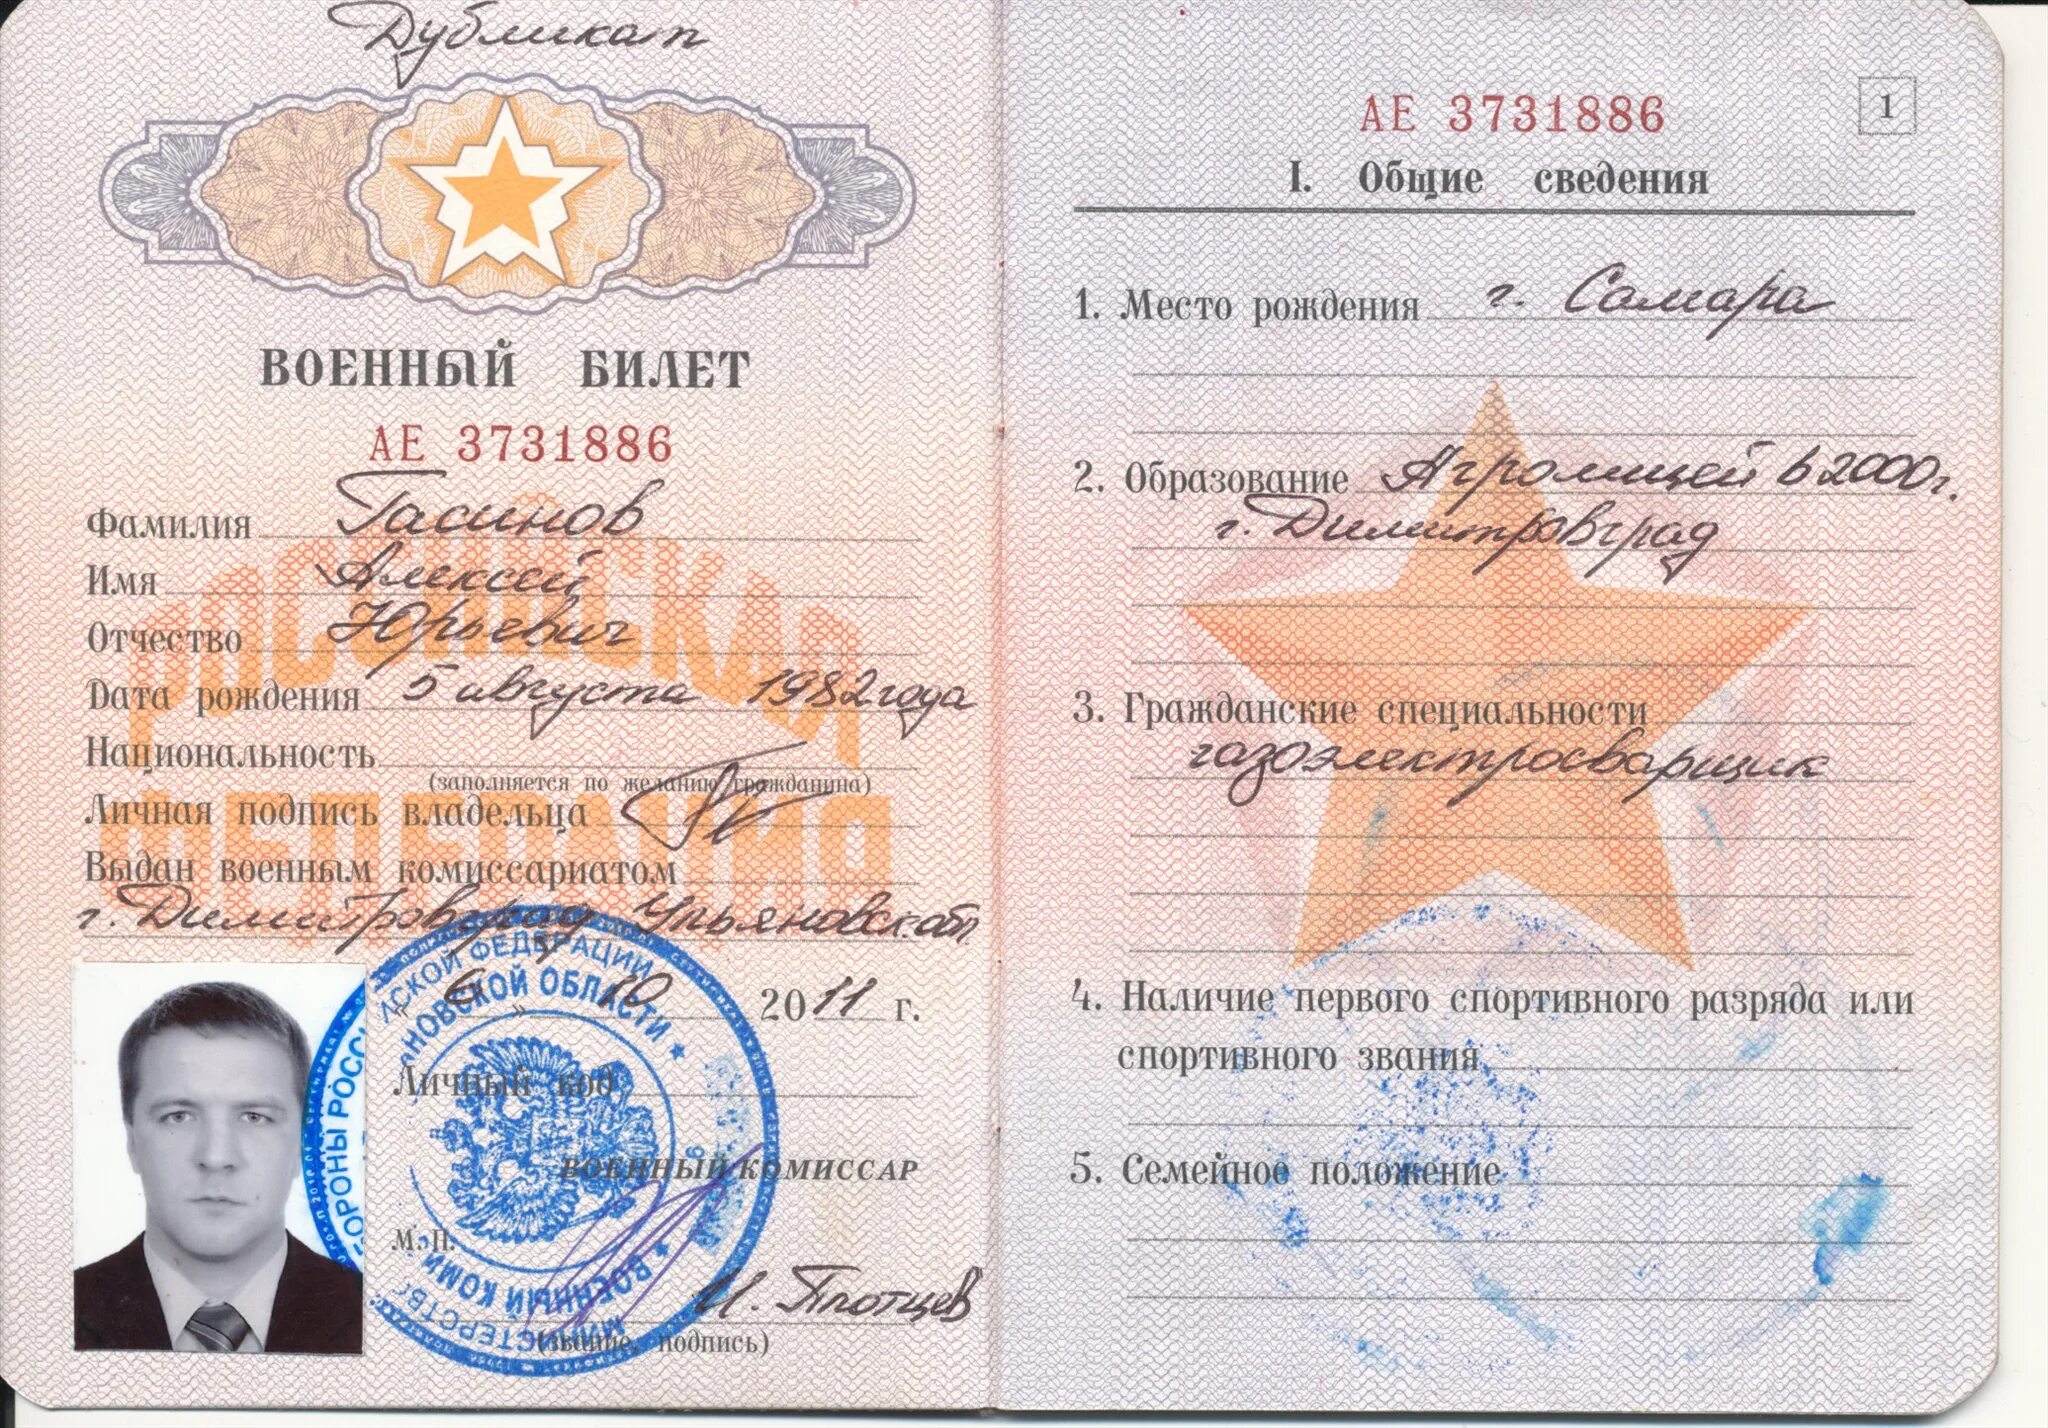 Билет участника боевых действий. Военный билет участника боевых действий. Военный билет участника боевых действий в Чечне.